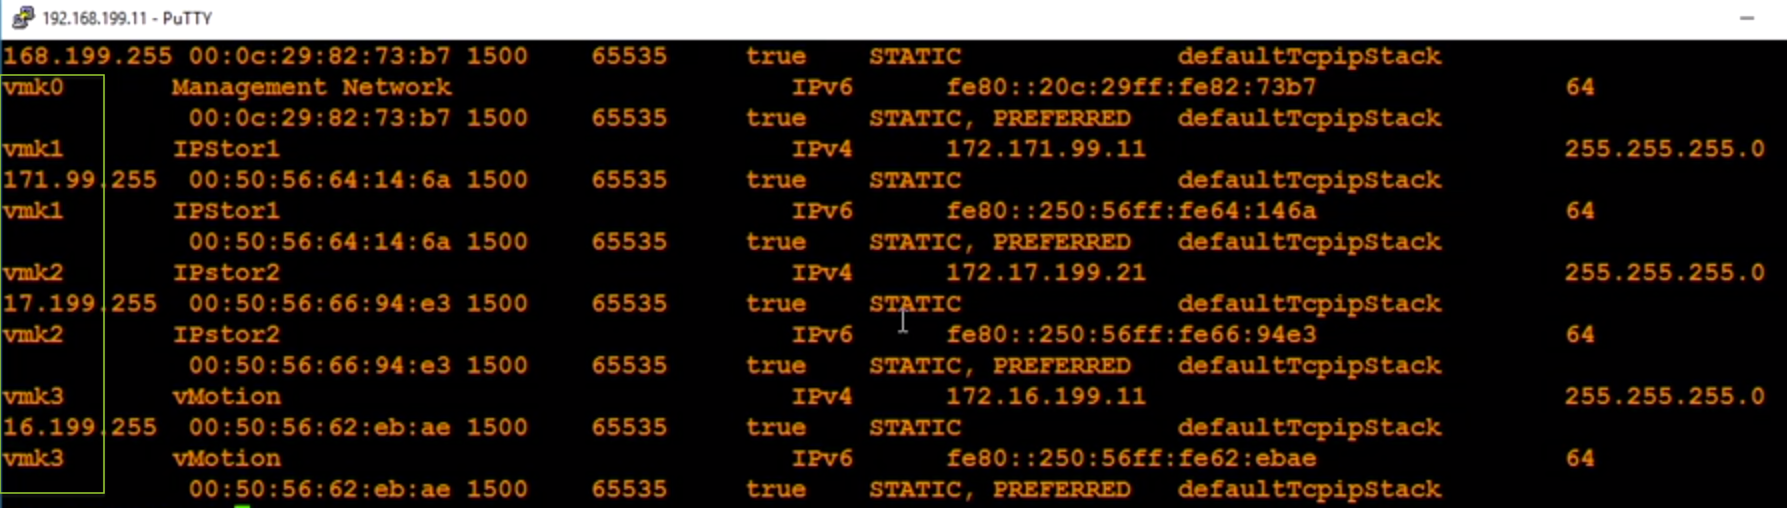 مشاهده ترافیک در کارت شبکه های مجازی VMware ESXi از طریق ابزار tcpdump